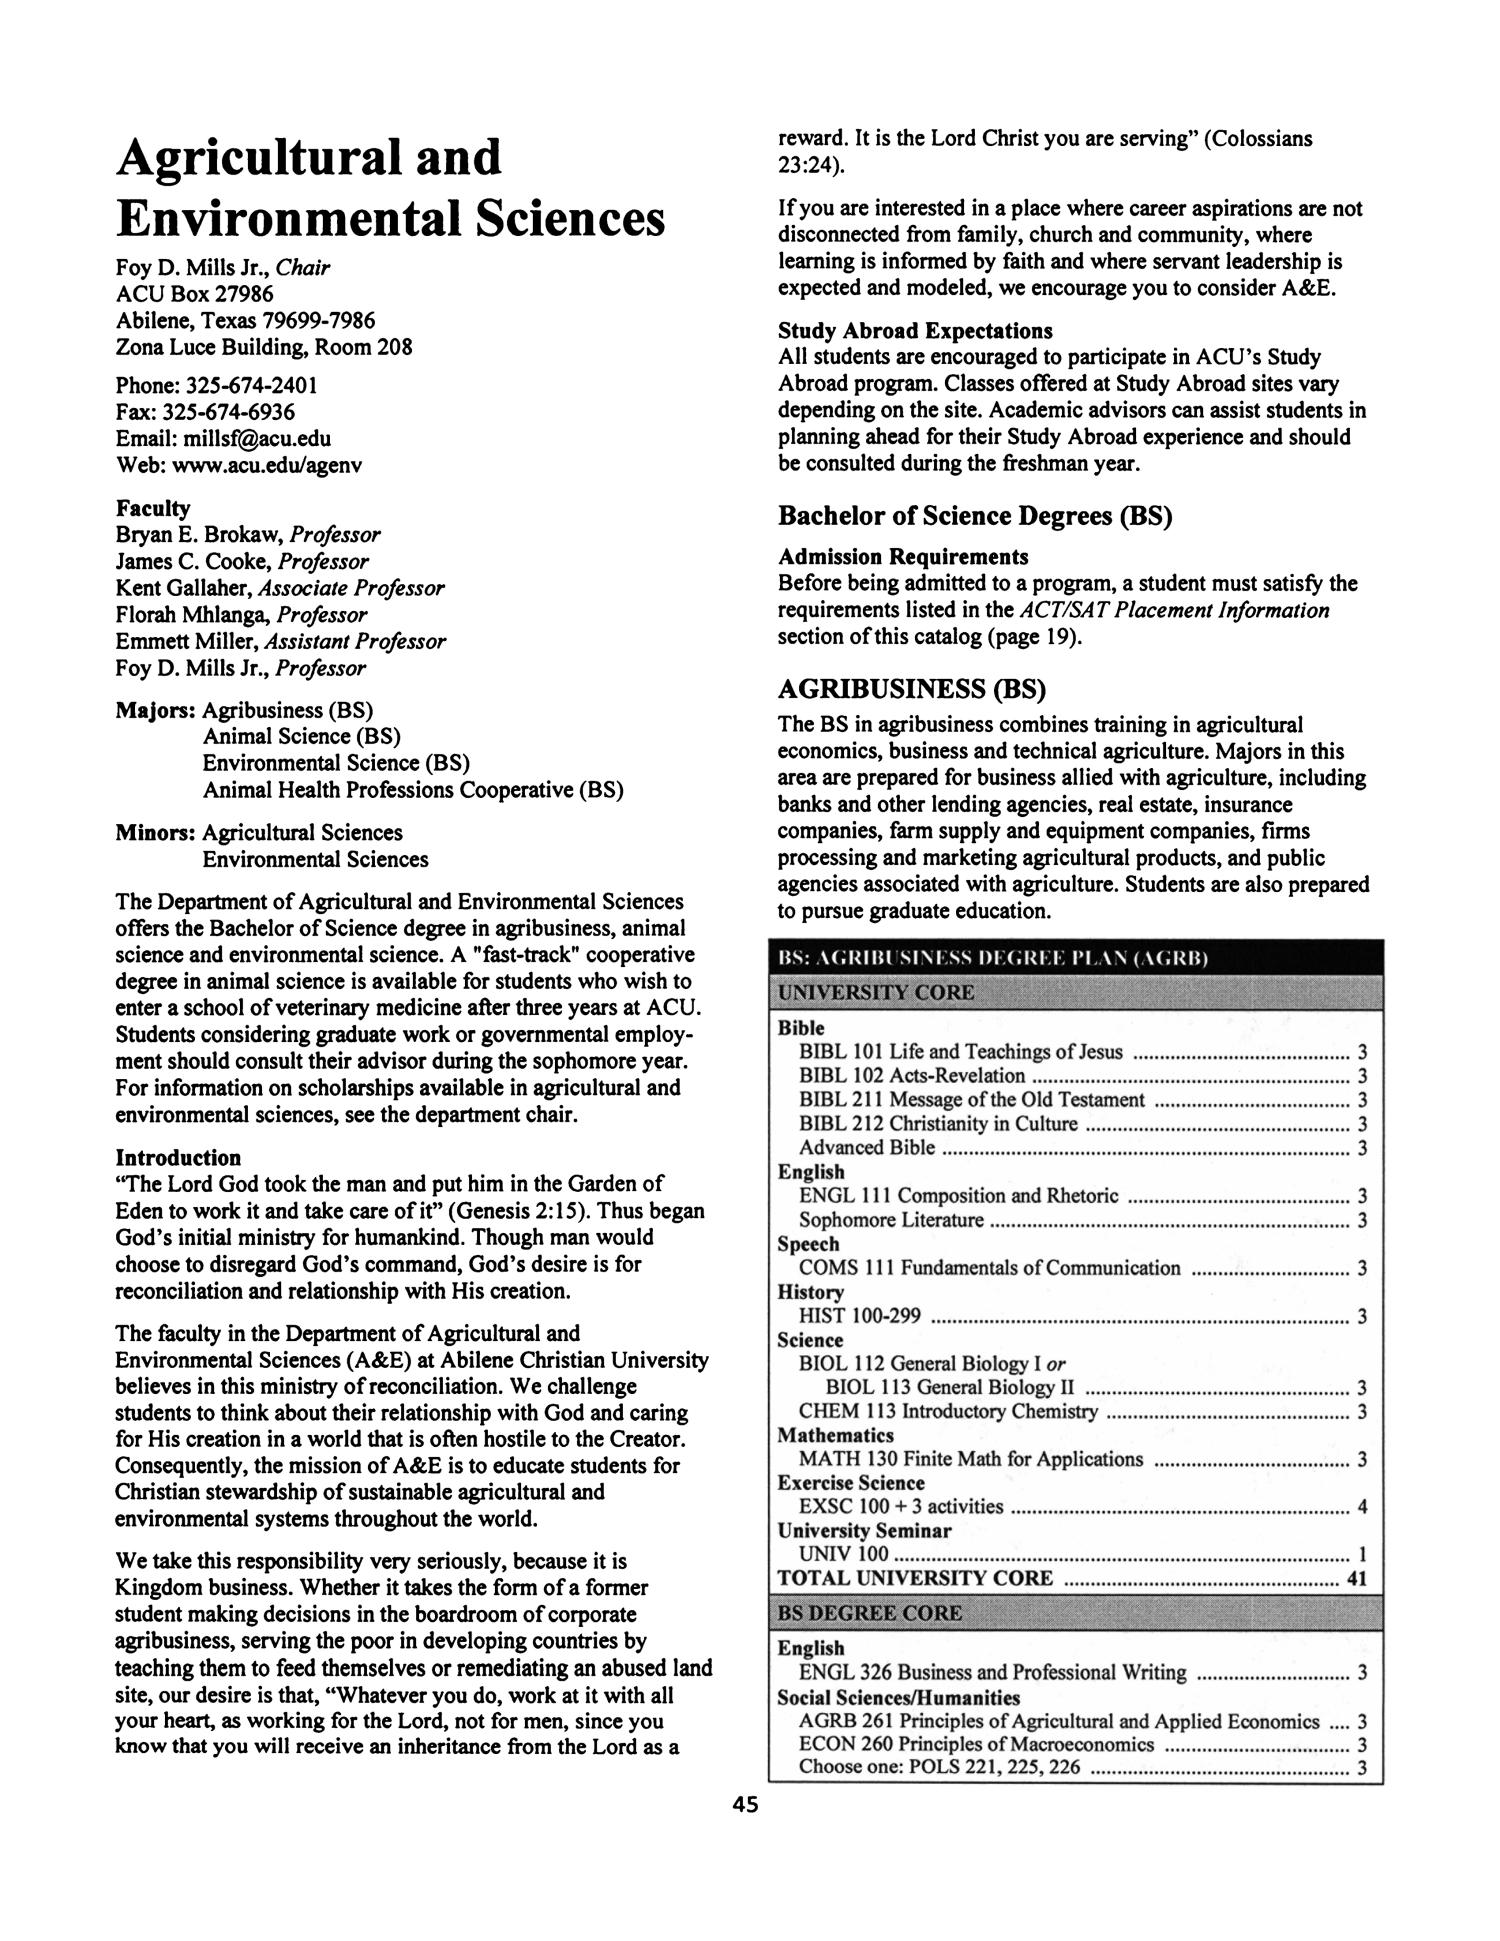 Catalog of Abilene Christian University, 2008-2009
                                                
                                                    45
                                                